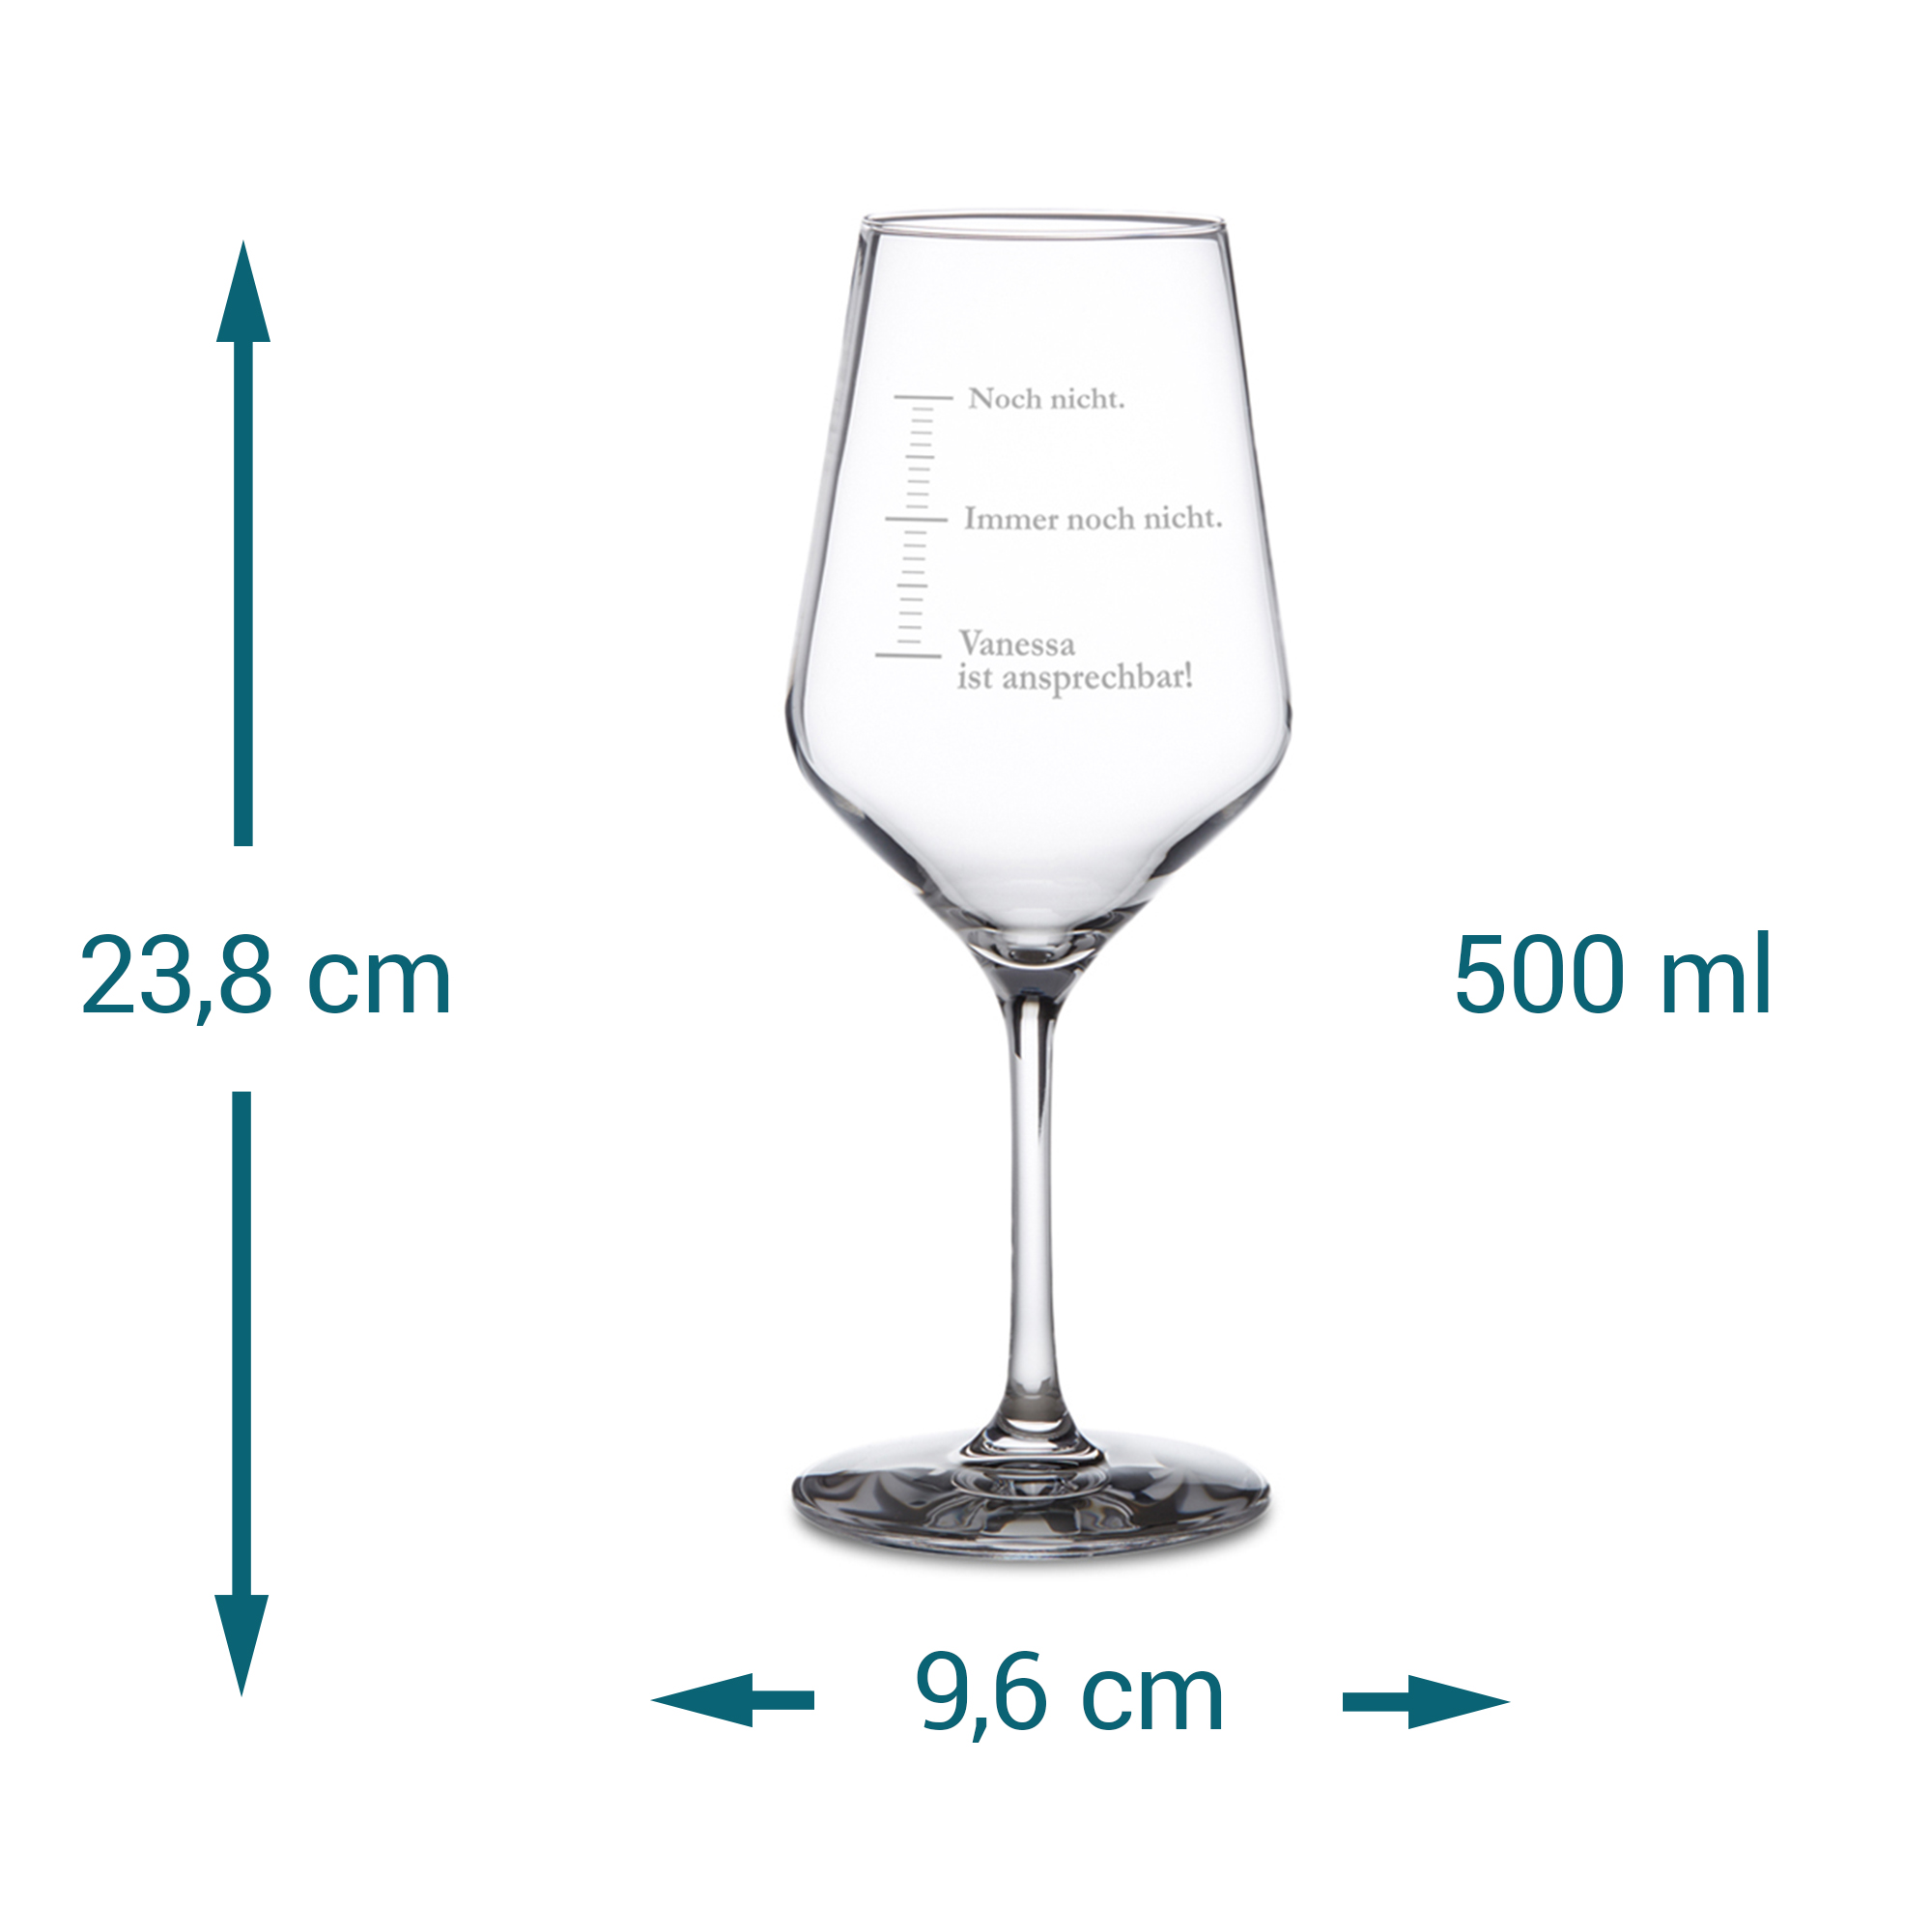 Weißweinglas mit Gravur - Nicht ansprechen 3960 - 6